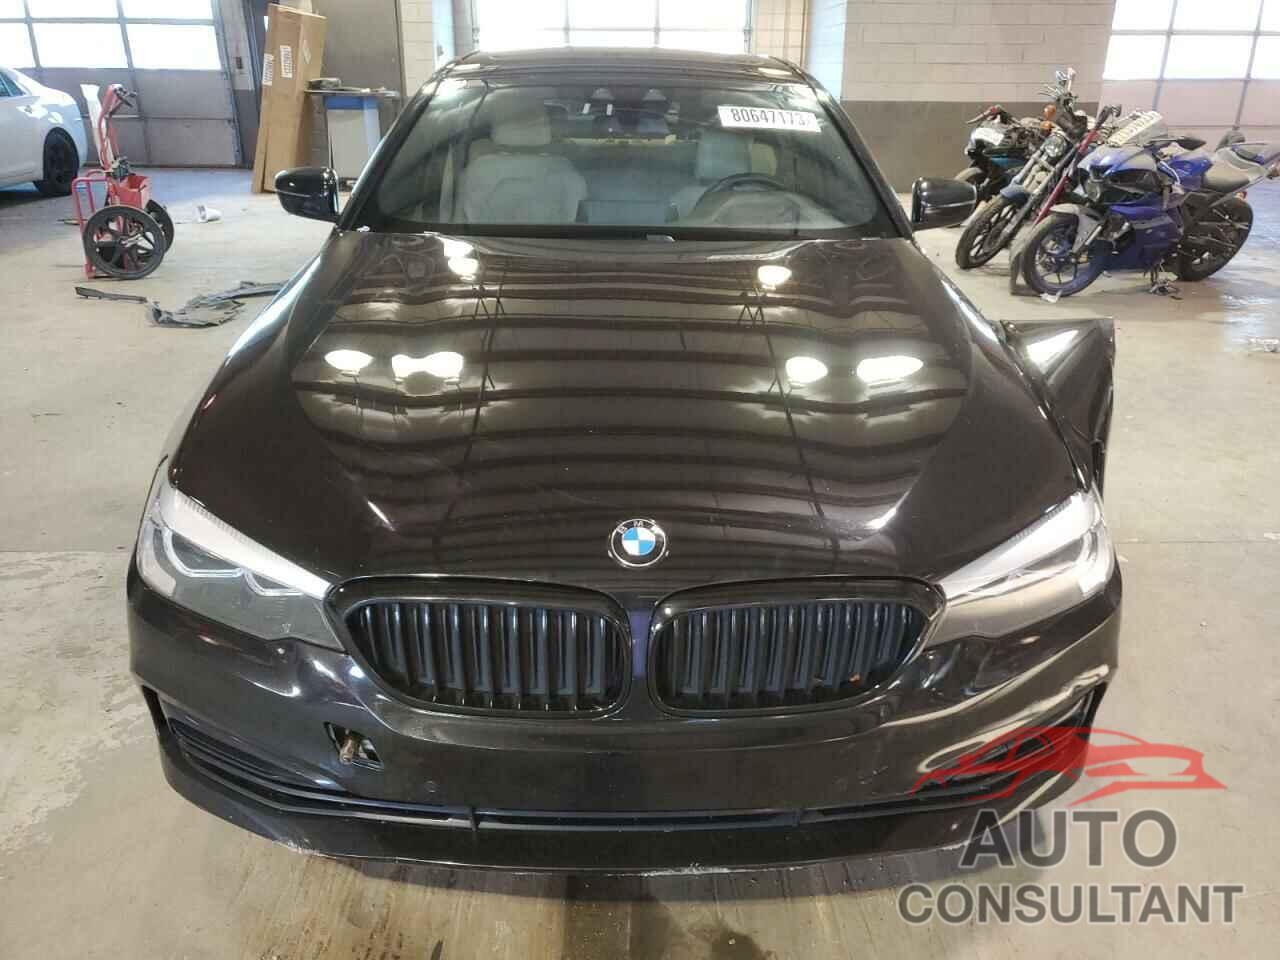 BMW 5 SERIES 2019 - WBAJE7C51KWW20519